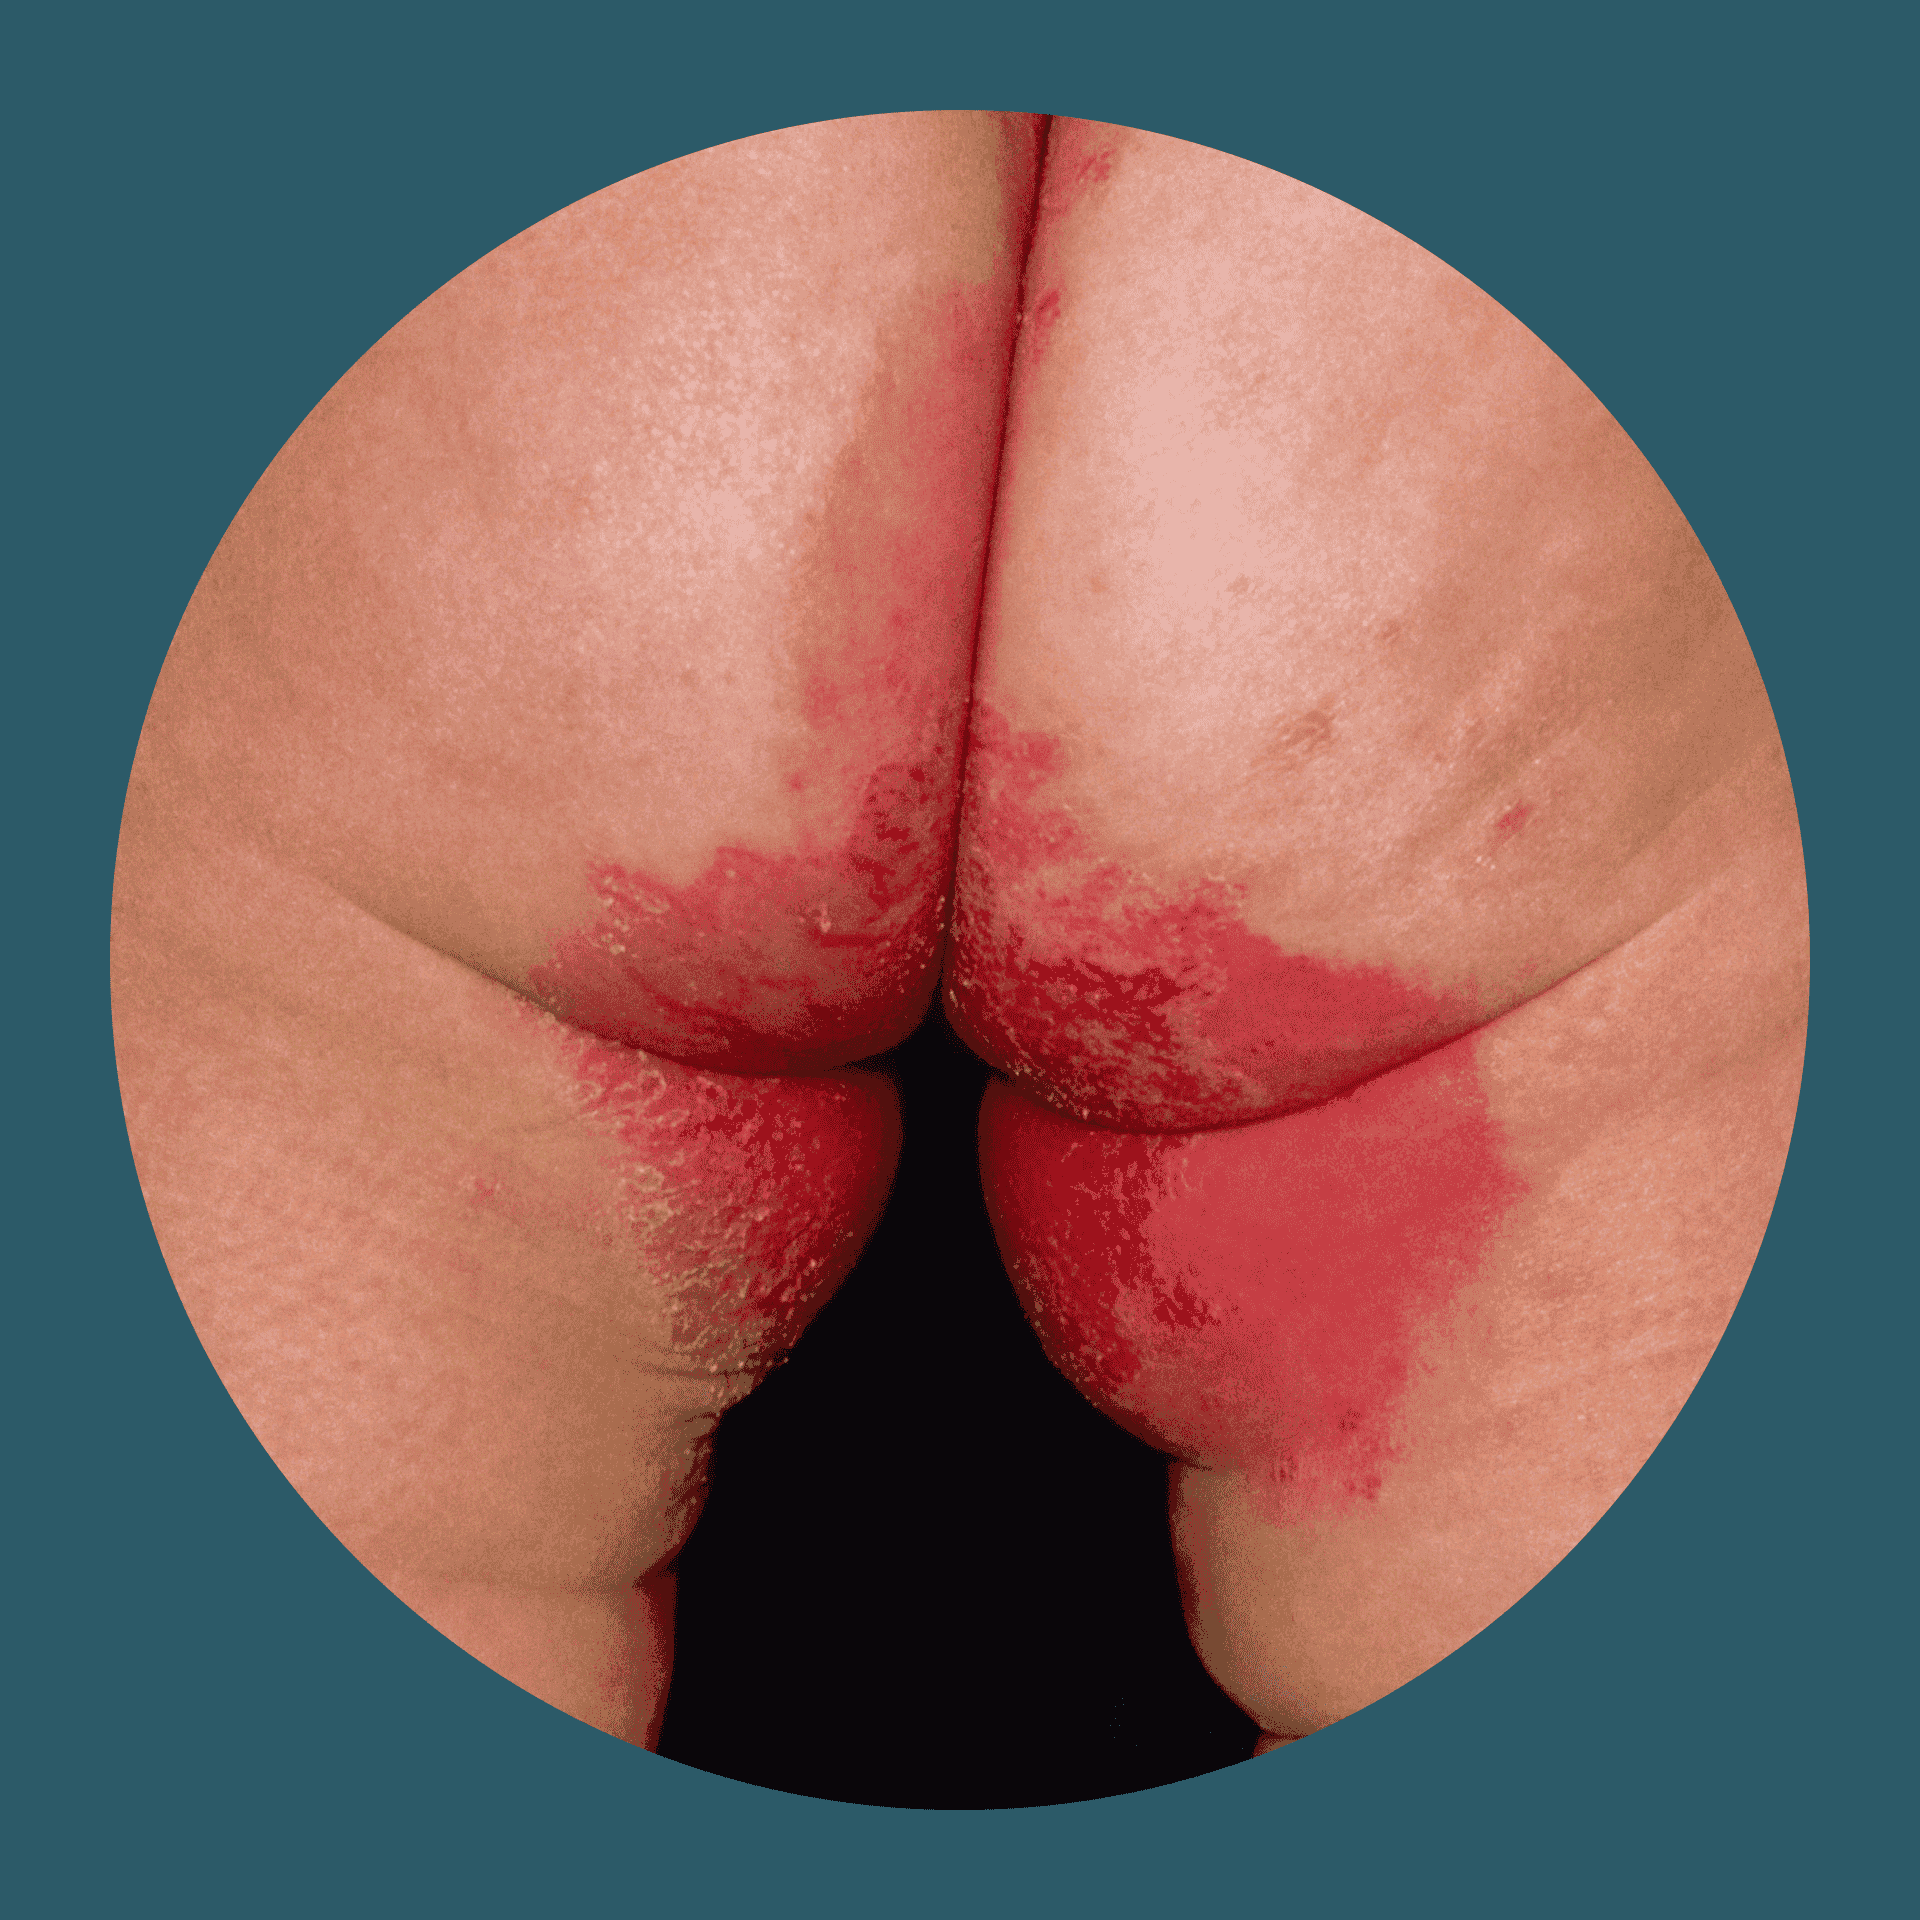 Plaques zwischen dem Gesäß bei Psoriasis inversa